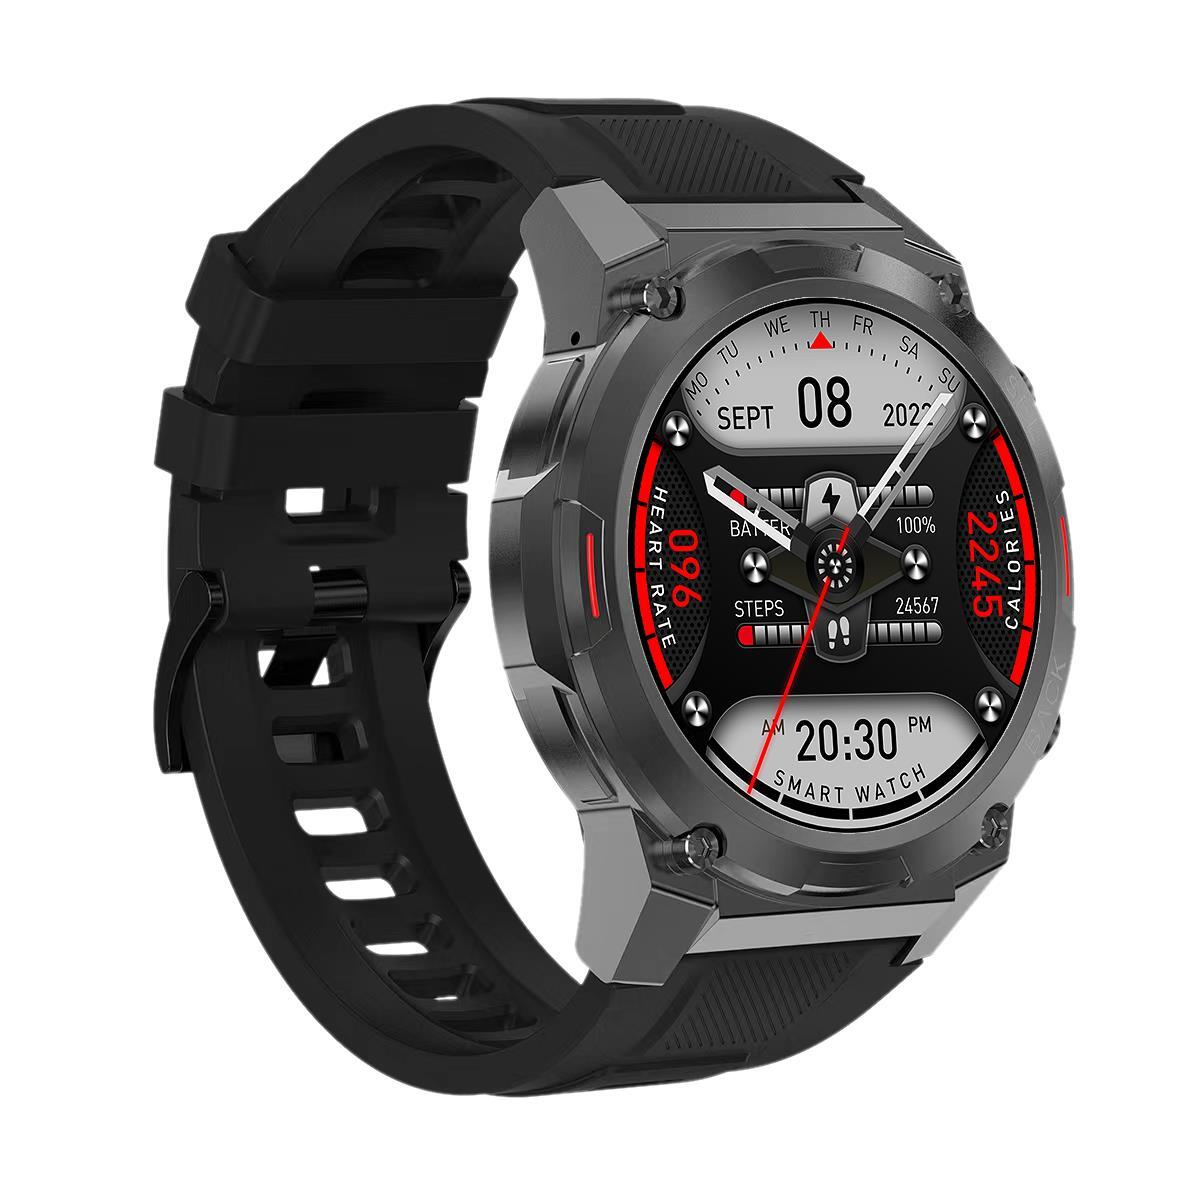 Smart hodinky Maxcom FIT FW63 COBALT PRE, čierna